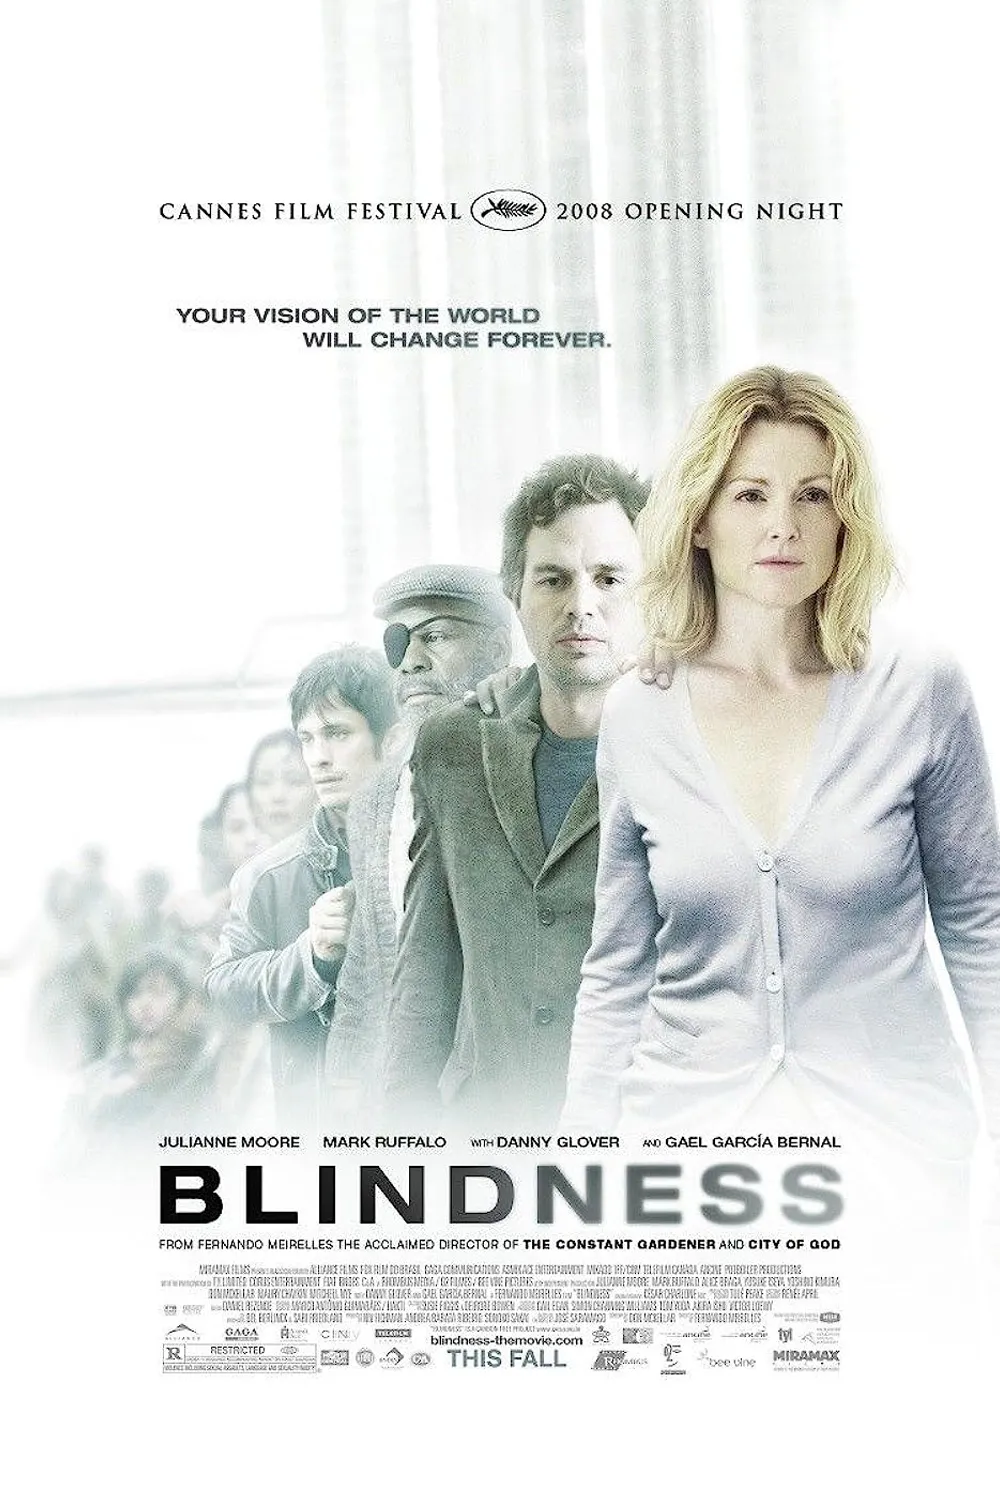 Blindness